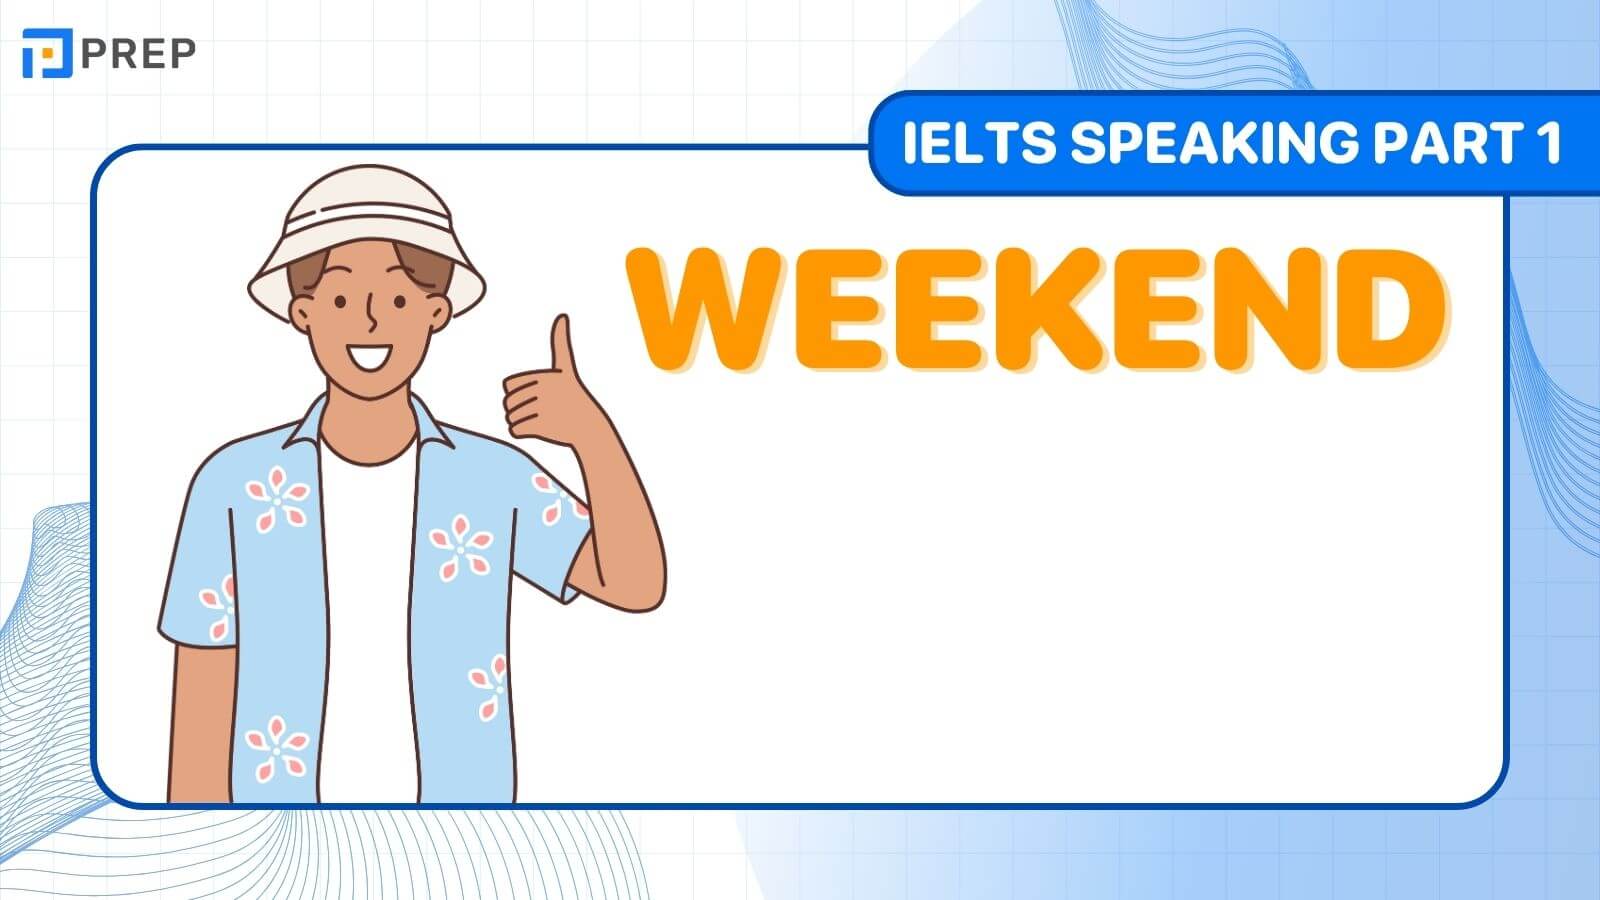 Đề bài, bài mẫu IELTS Speaking Part 1 chủ đề: Weekend